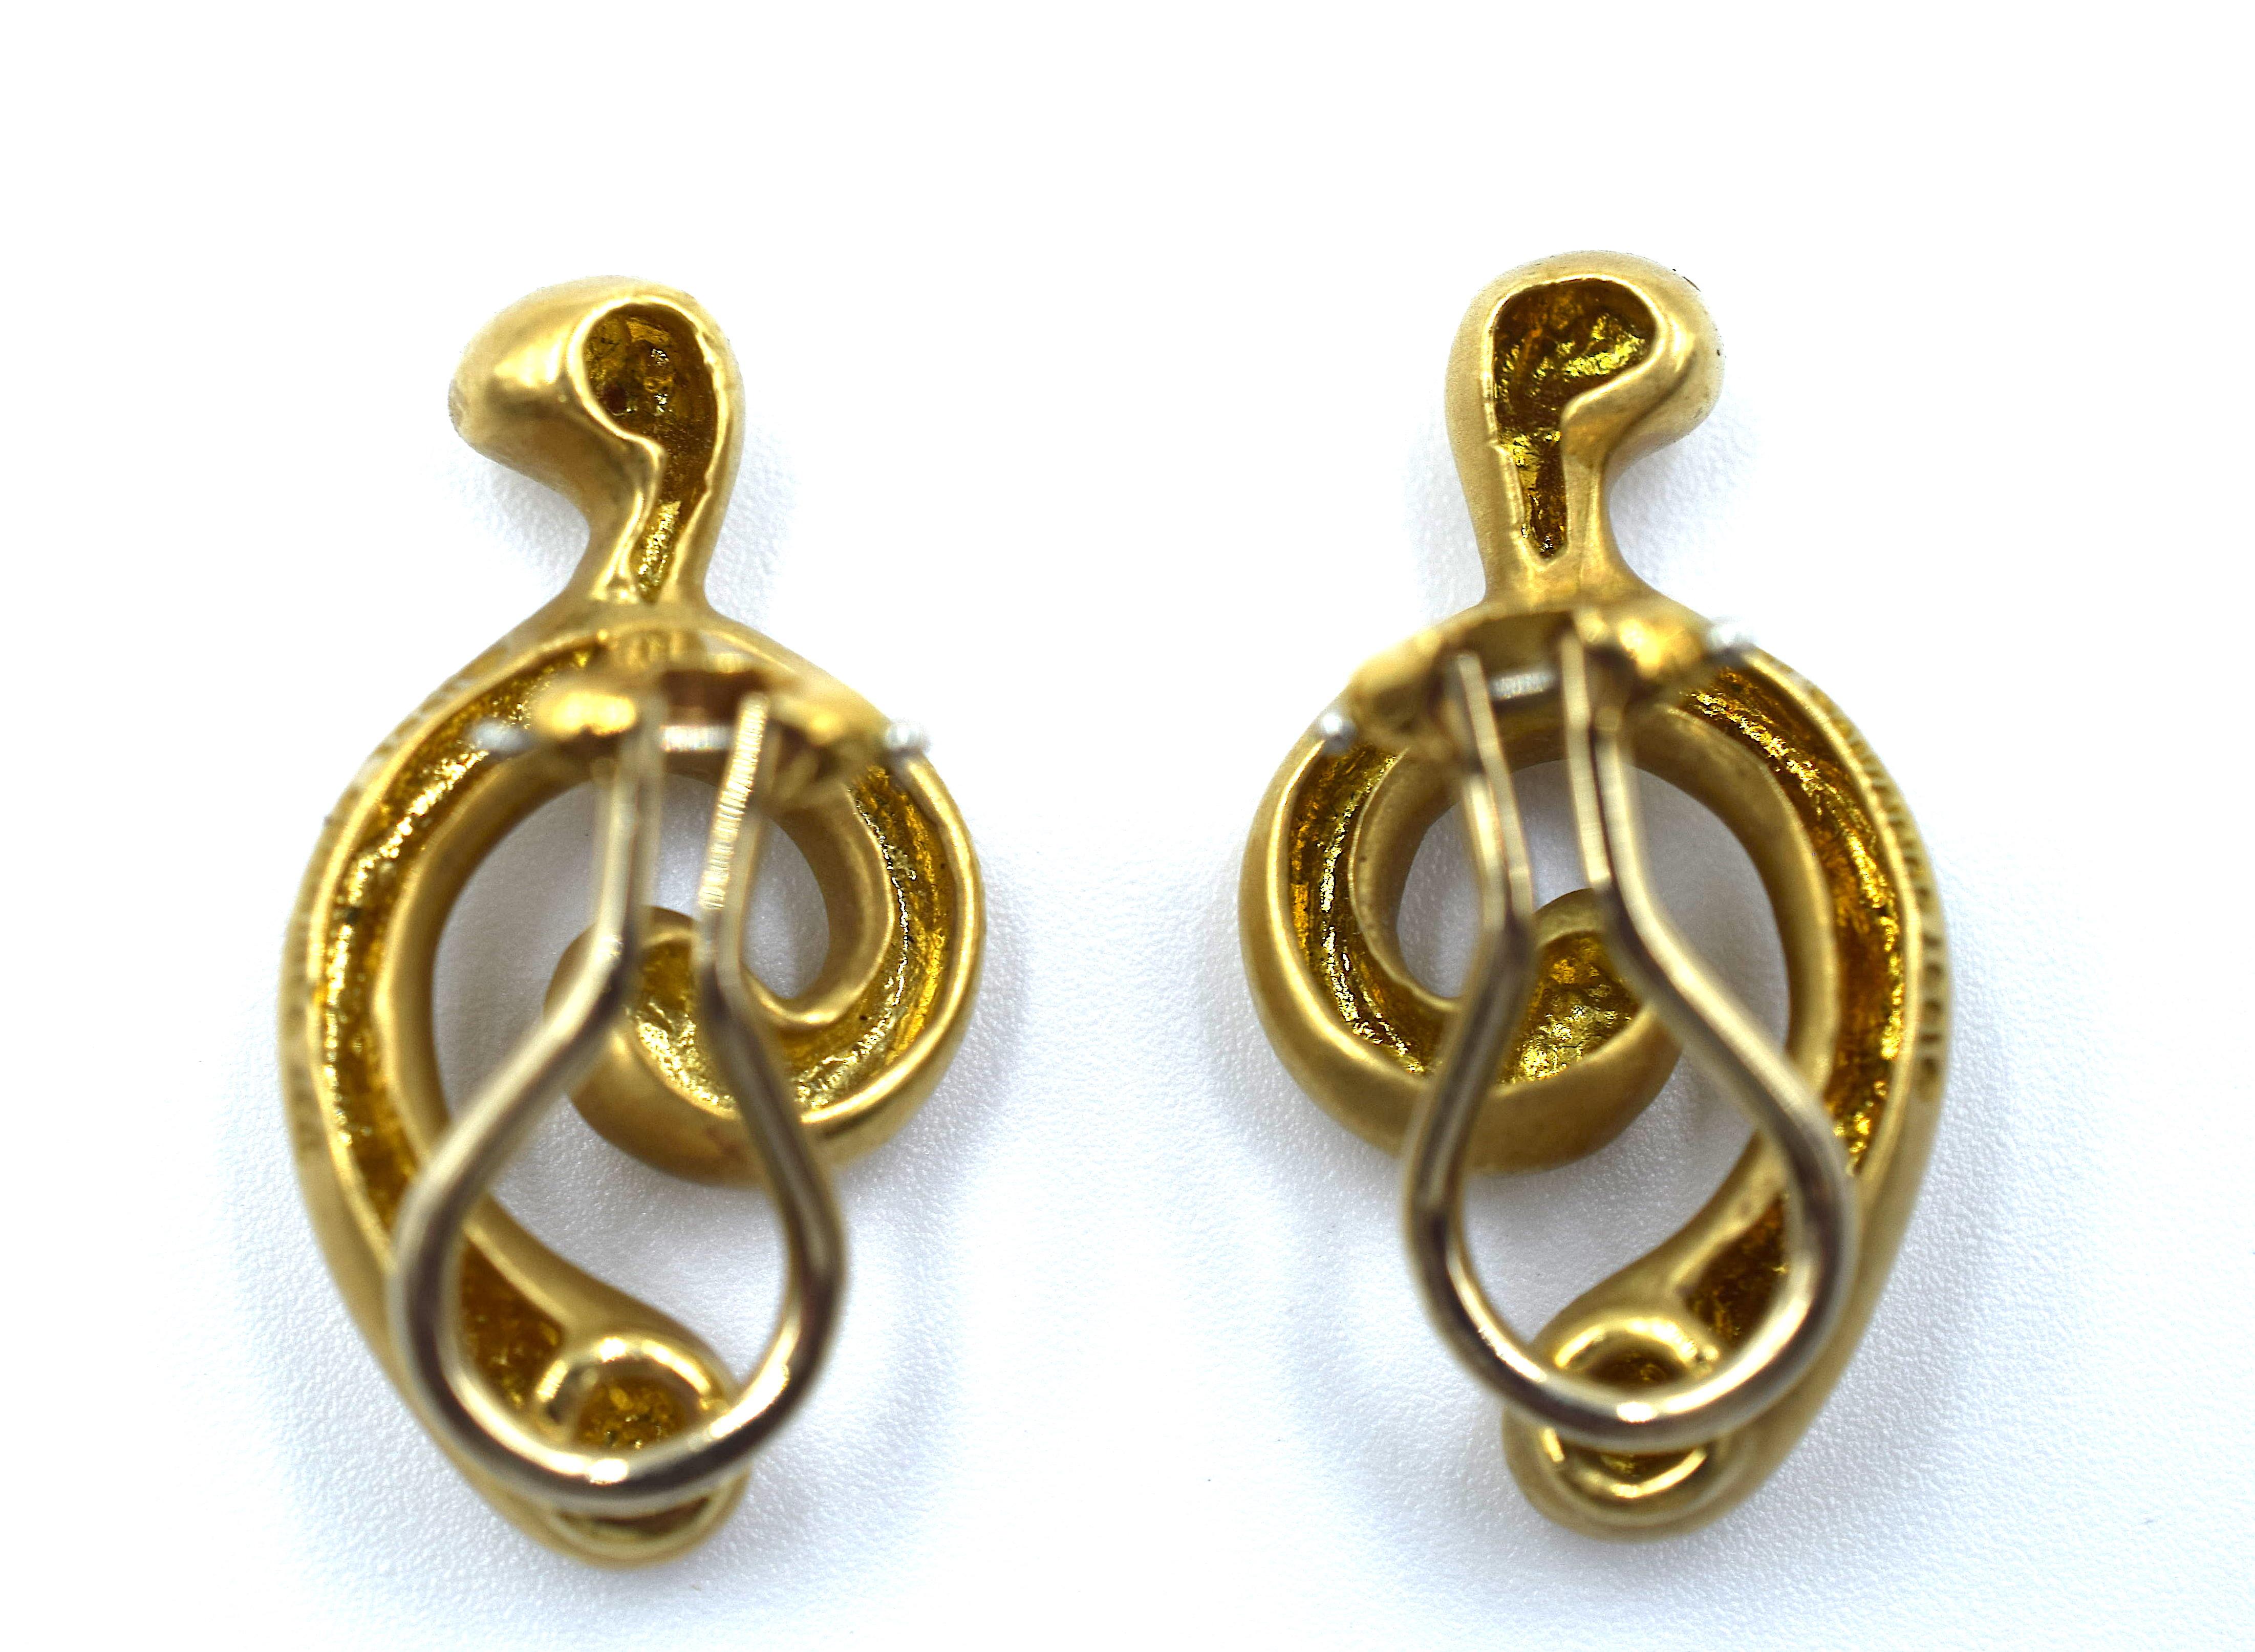 Women's Angela Cummings 18 Karat Yellow Gold Earrings Swirling Design